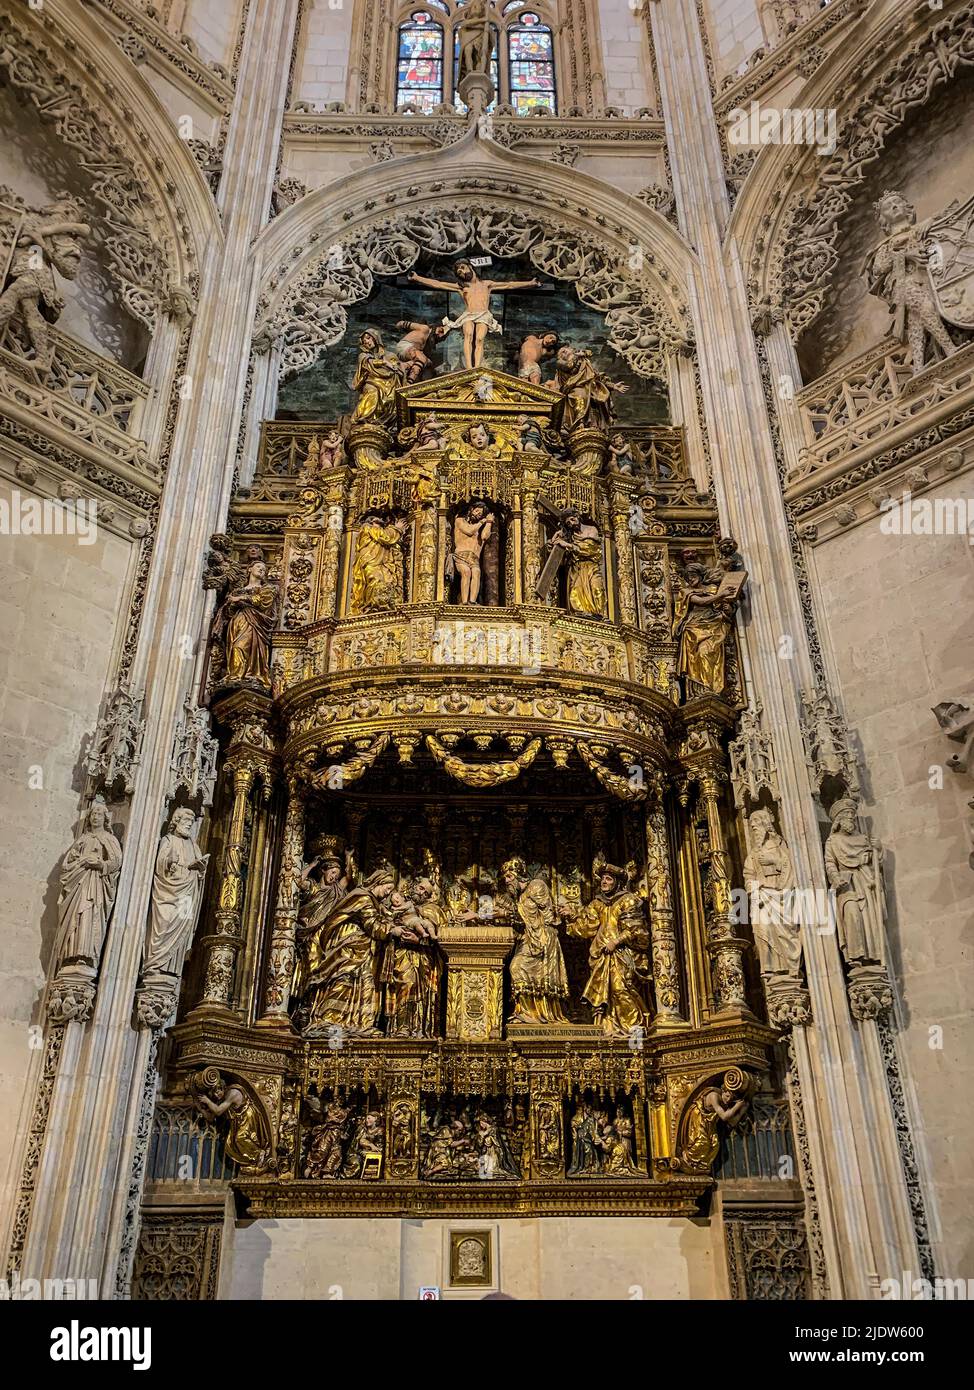 Spanien, Burgos. Kathedrale von Santa Maria, ein Weltkulturerbe. Altarbild in der Capilla de los Condestables. Stockfoto